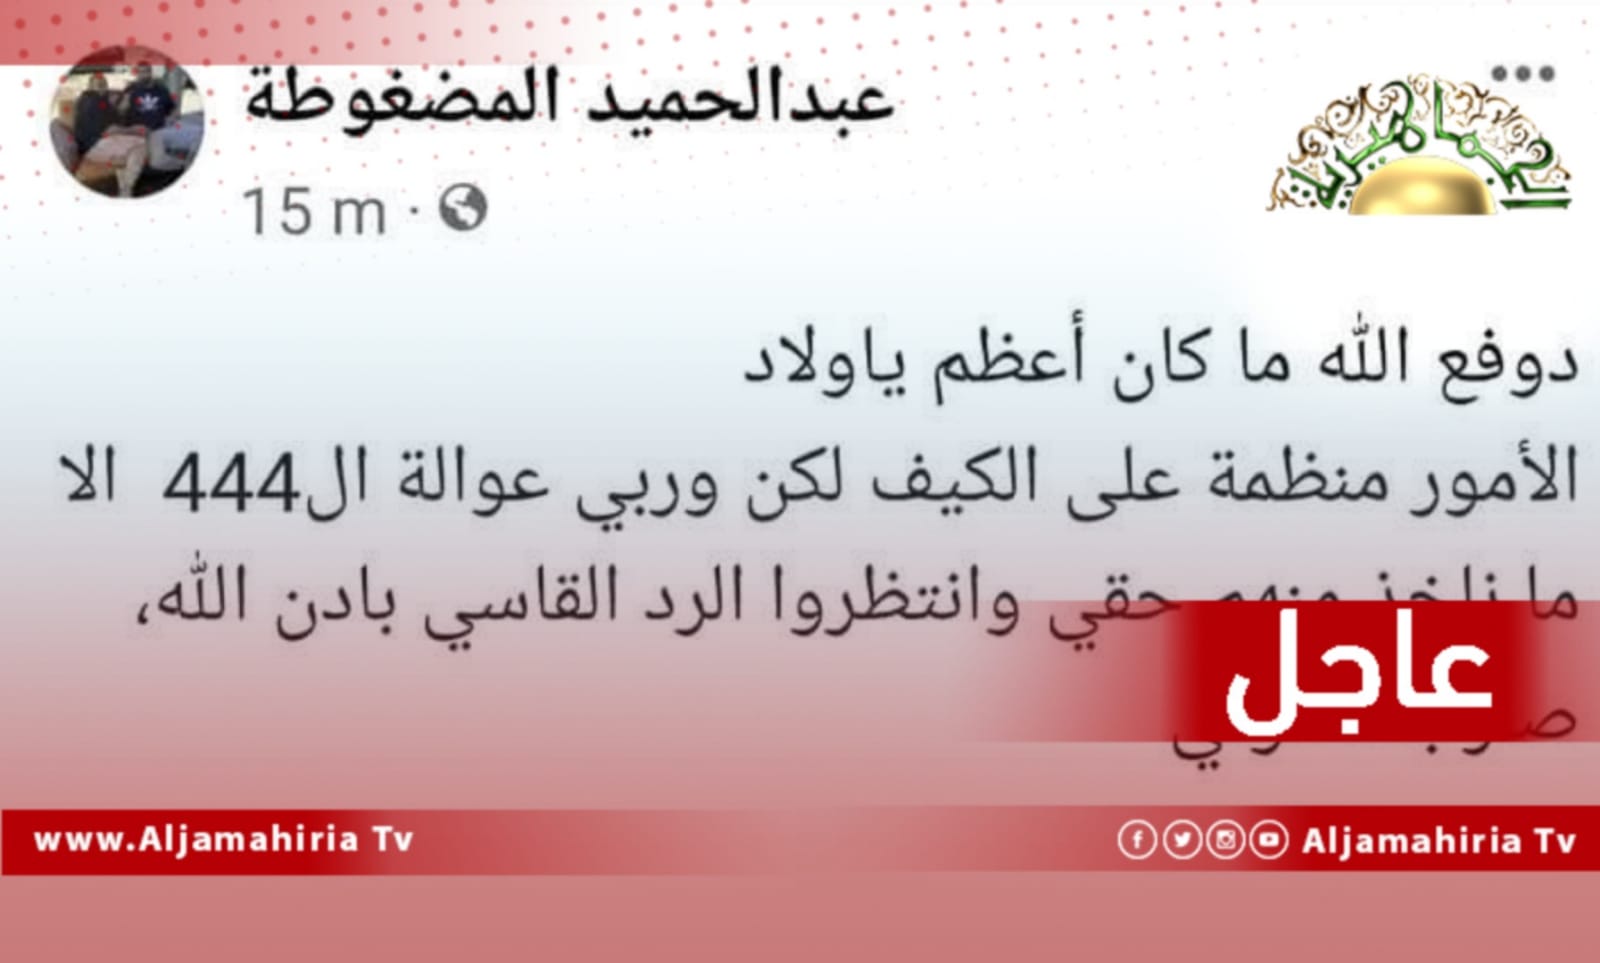 عاجل| المليشياوي حميد المضغوط يوجه تهديد لكتيبة 444 قتال عبر حسابه على الفيسبوك عقب محاولة استهداف فاشلة تعرض لها